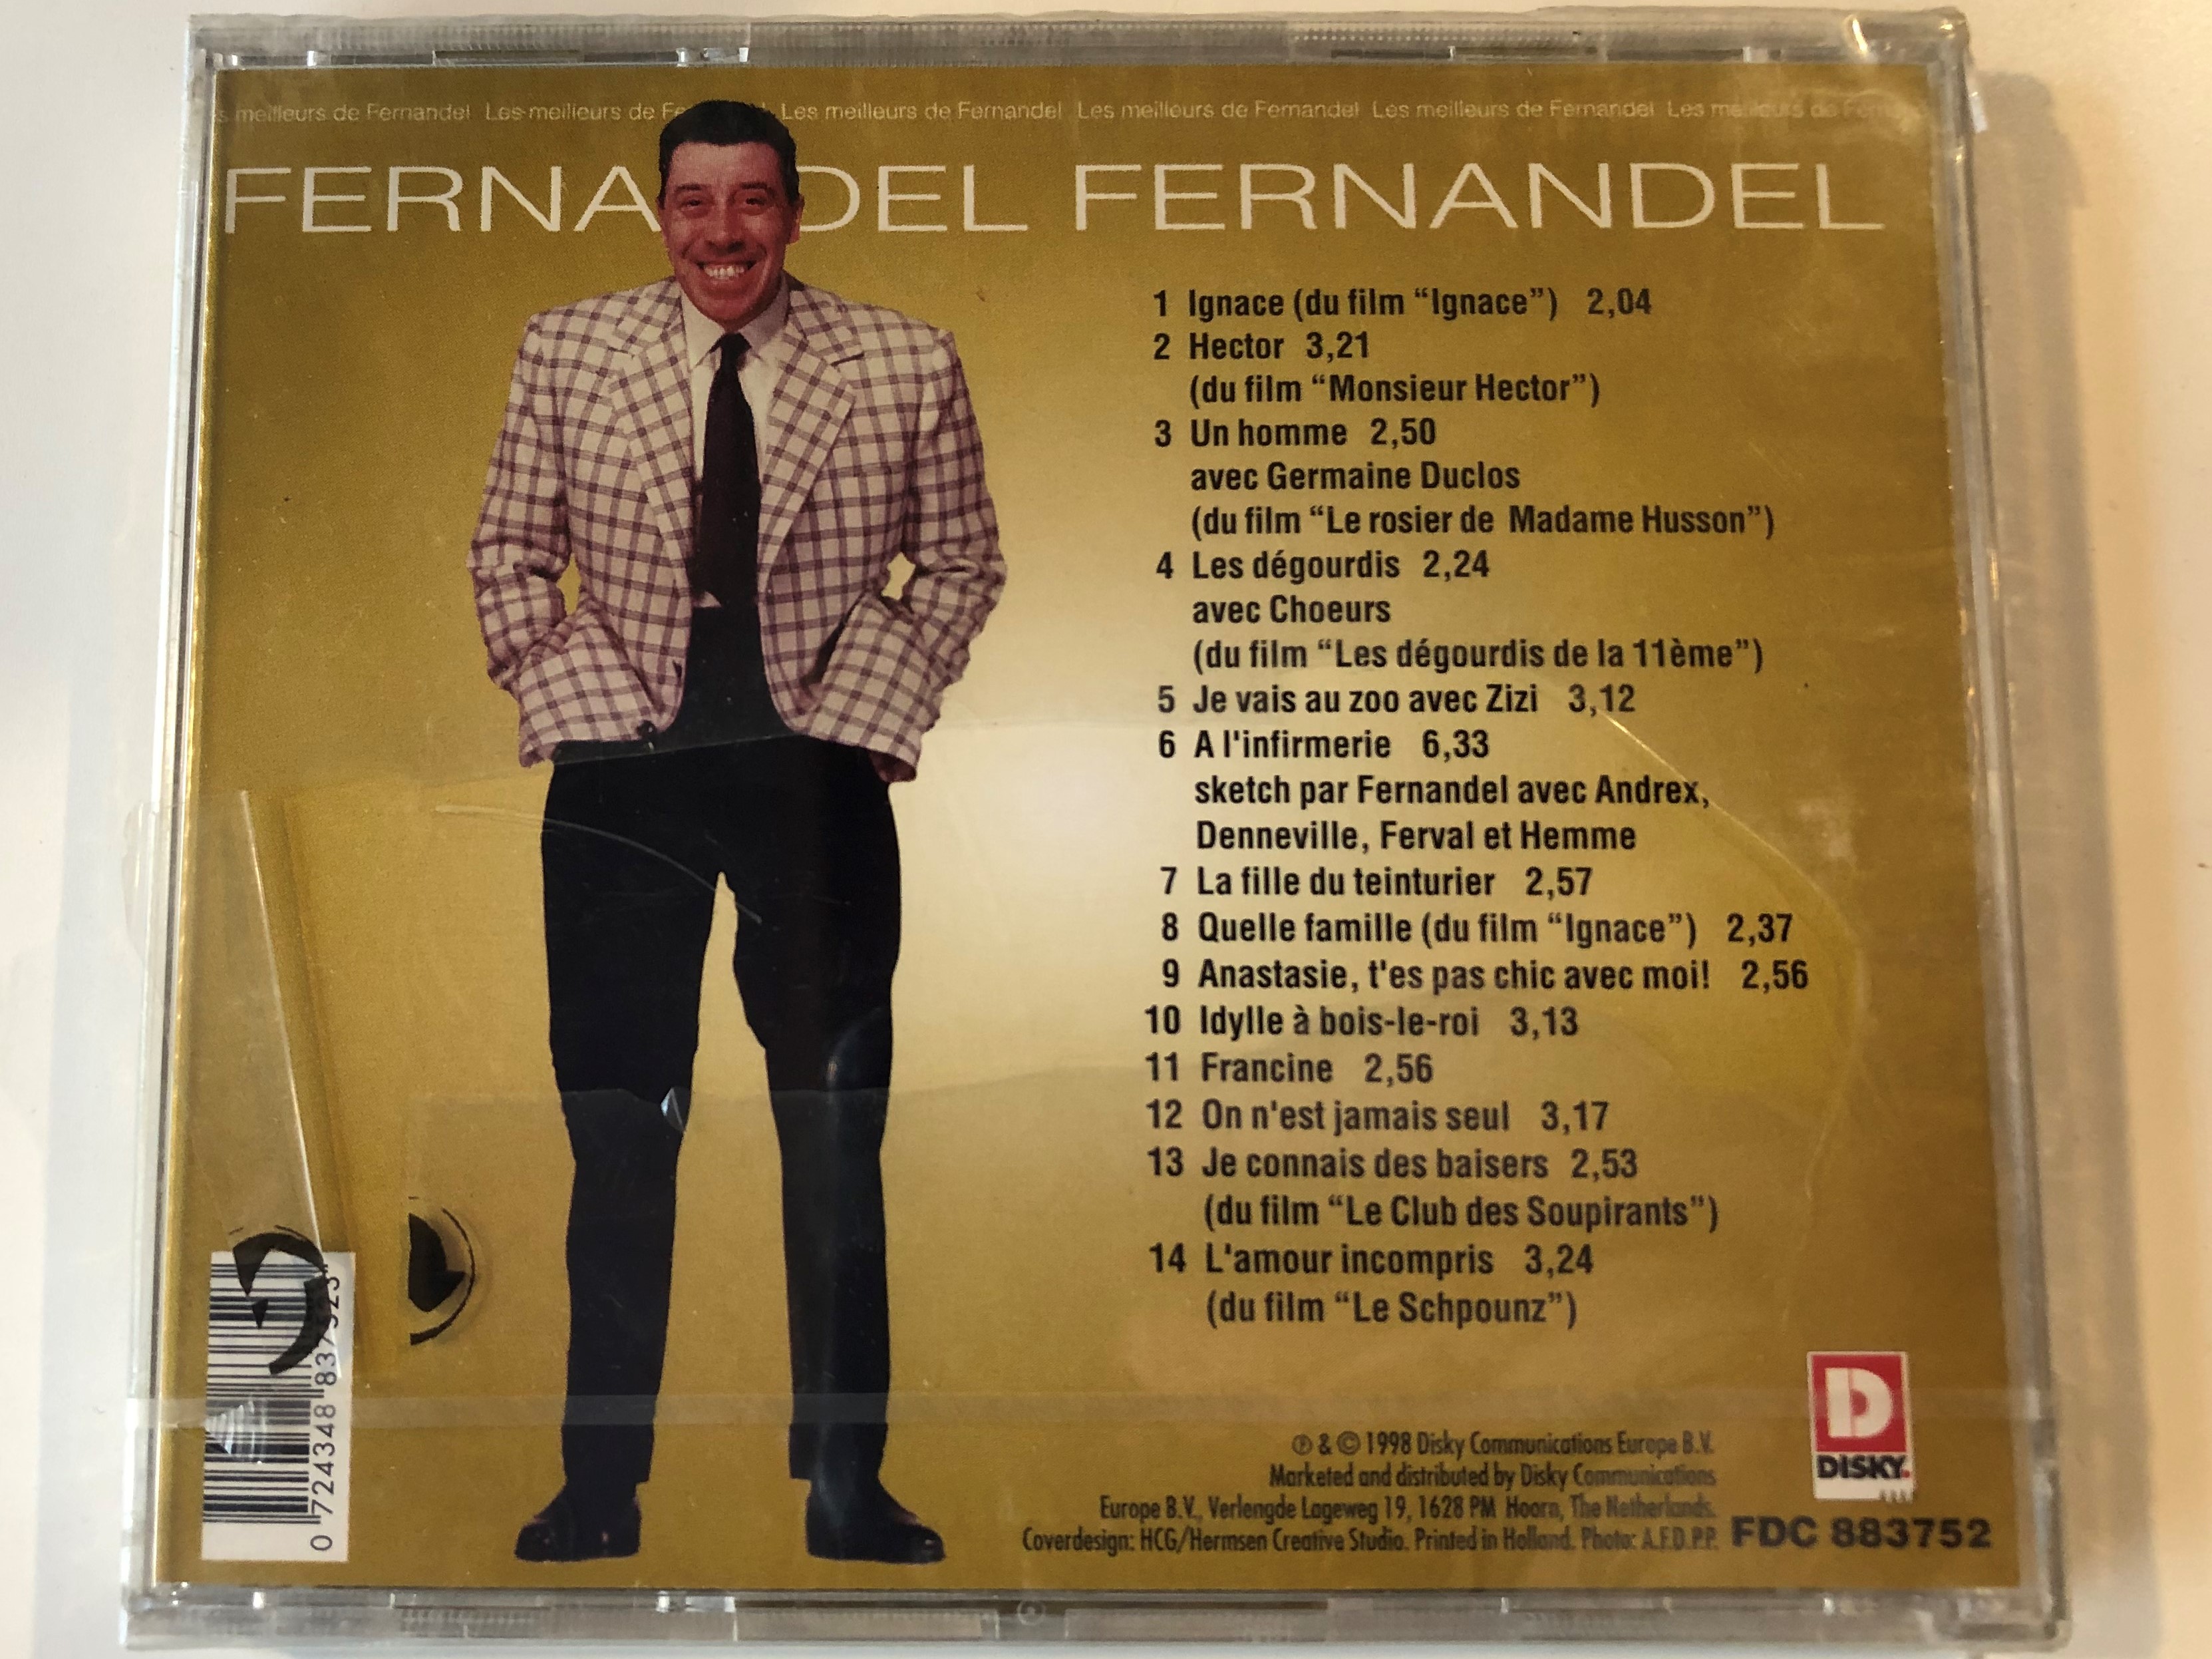 fernandel-les-meilleurs-de-fernandel-un-homme-francine-a-l-infirmerie-ignace-la-fille-du-teinturier-on-n-est-jamais-seul-disky-audio-cd-1998-fdc-883752-2-.jpg